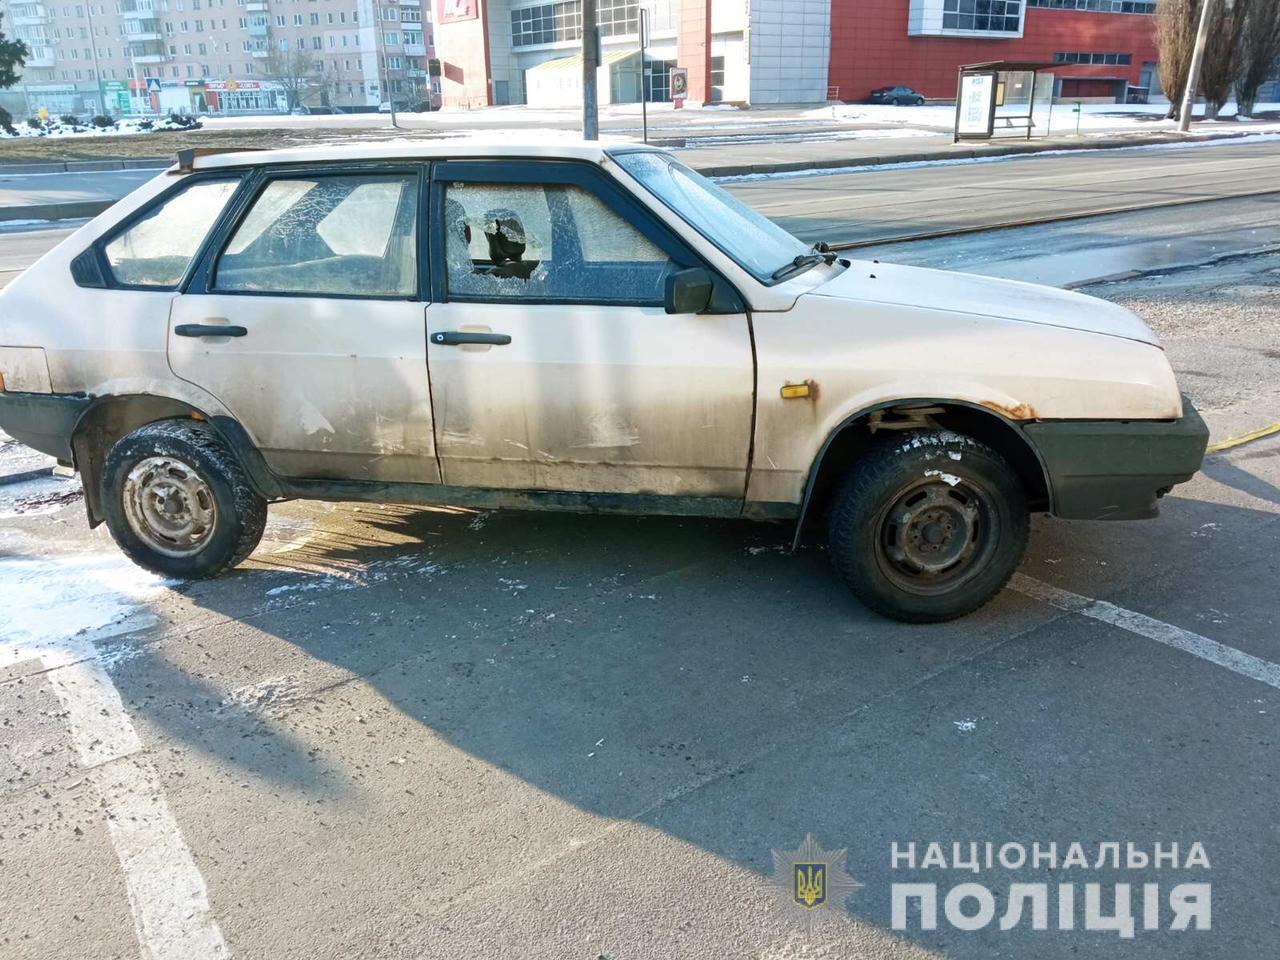 Криминал Харьков: Пойманы на горячем автоворы, пытавшие угнать машину на проспекте Гагарина